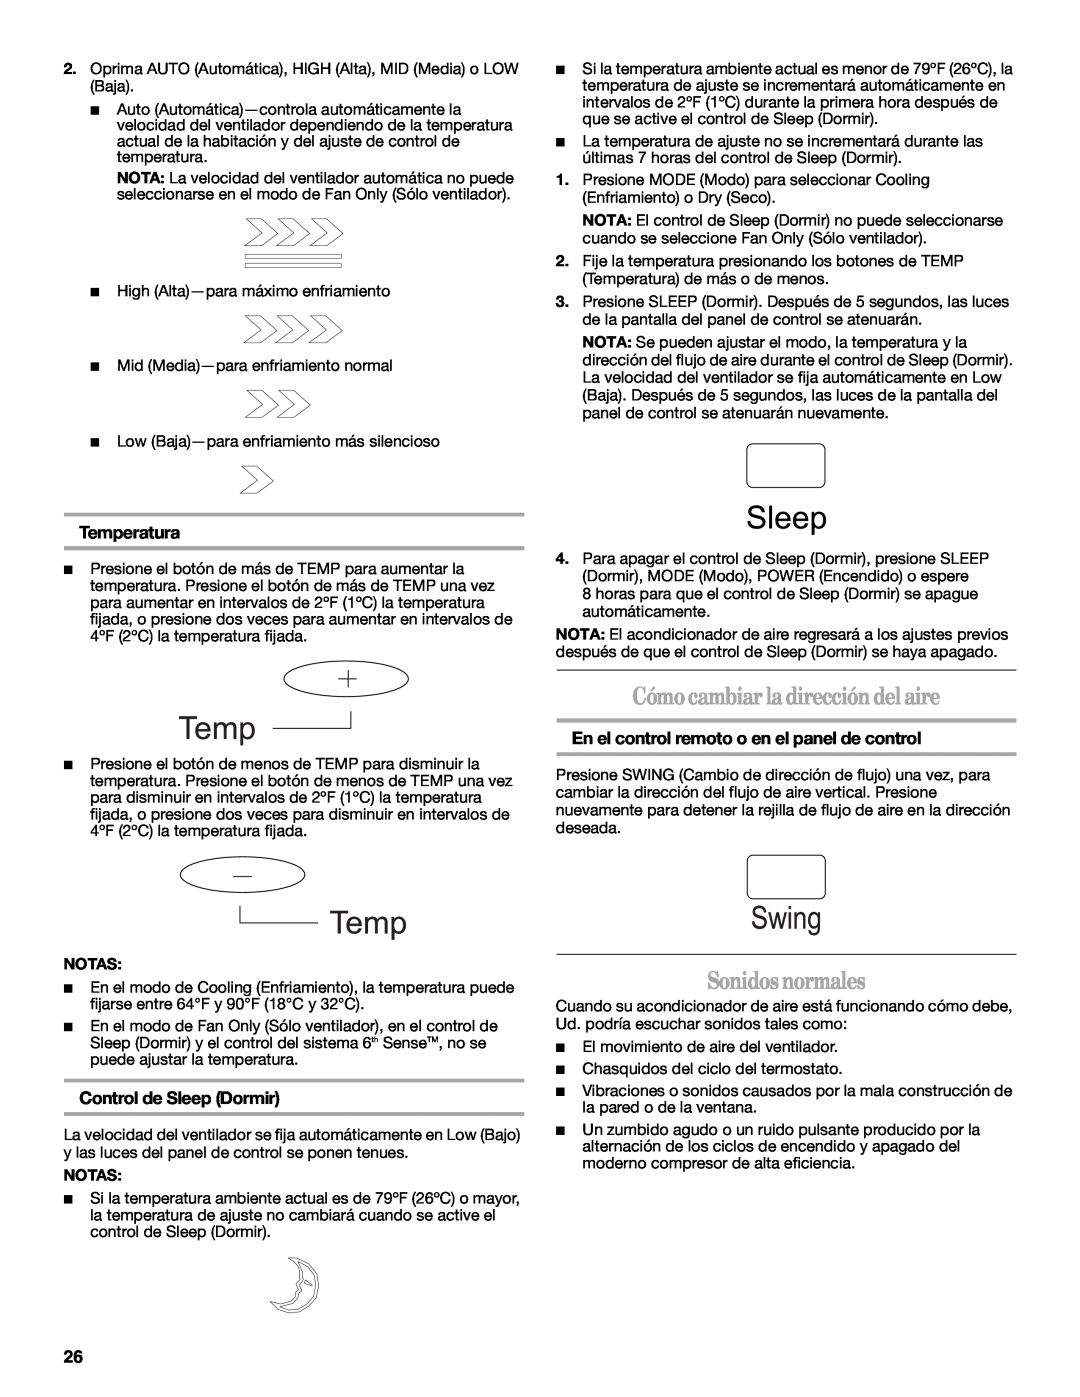 Whirlpool 1328891 manual Cómocambiarladireccióndelaire, Sonidosnormales, Control de Sleep Dormir, Temperatura 